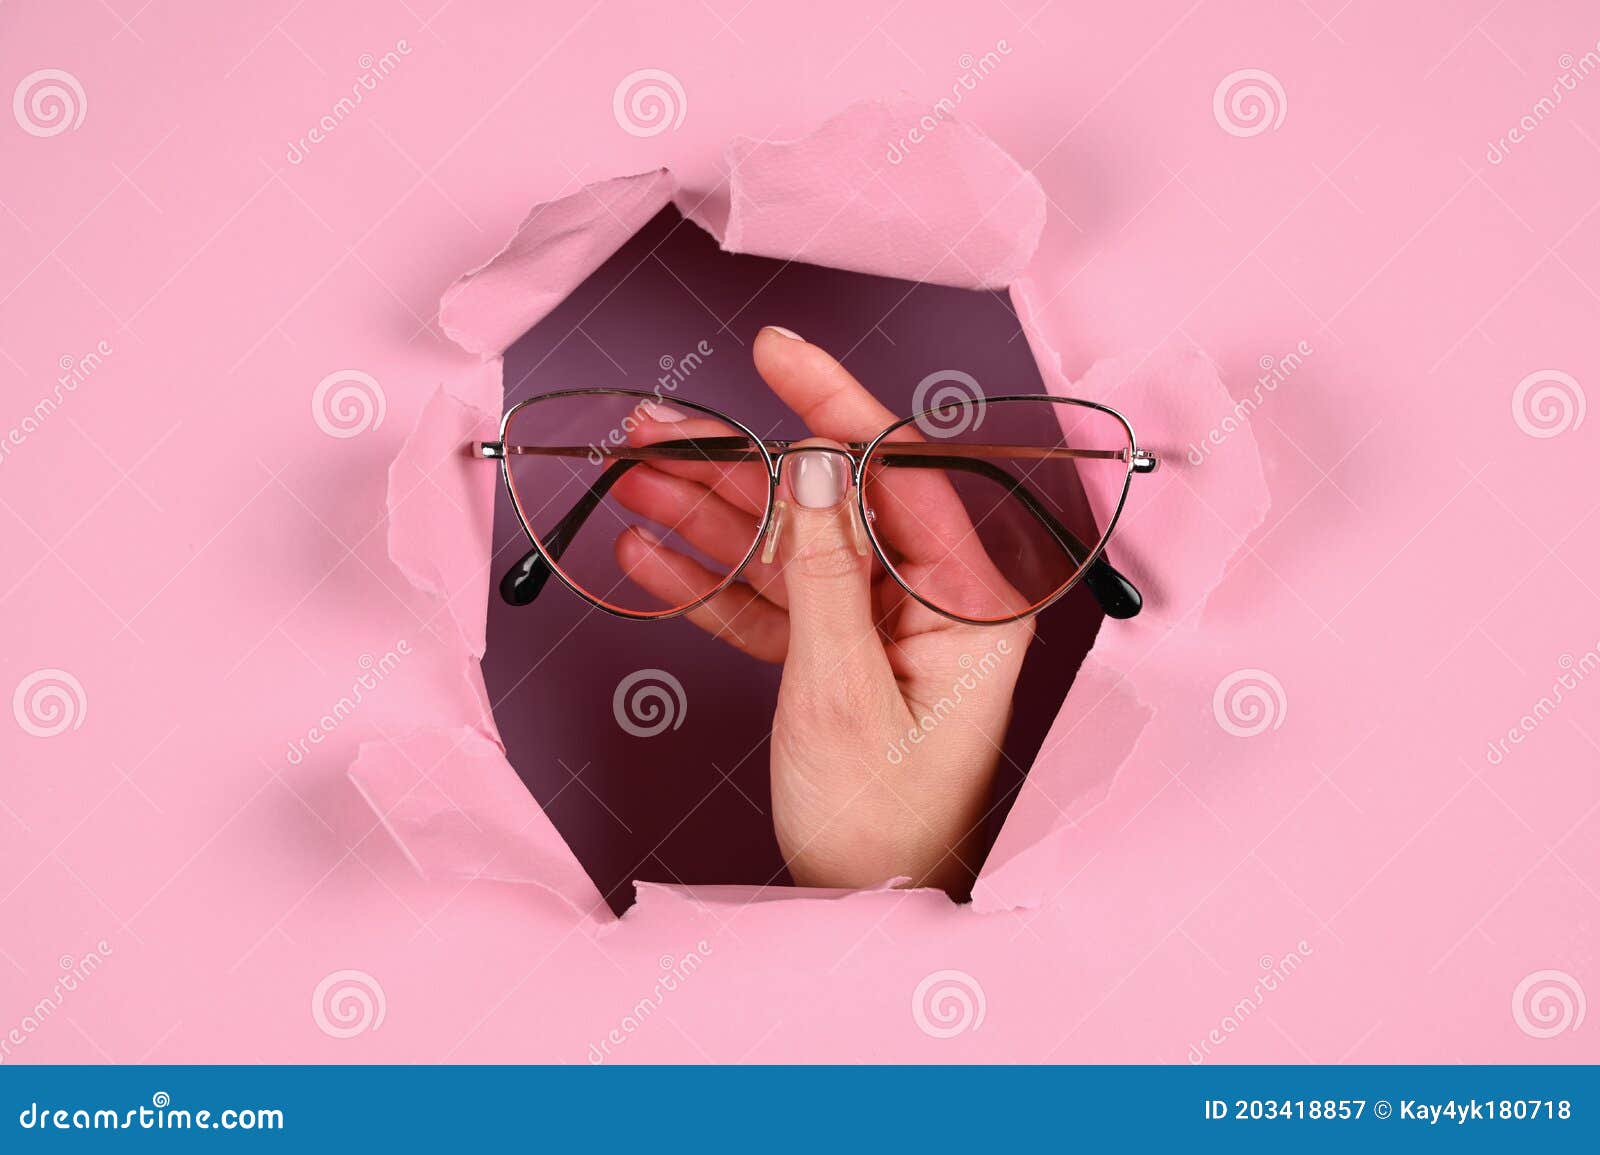 La Mano Sujeta Gafas En Un Fondo Rosado Imagen de archivo - Imagen de  humano, medicina: 203418857